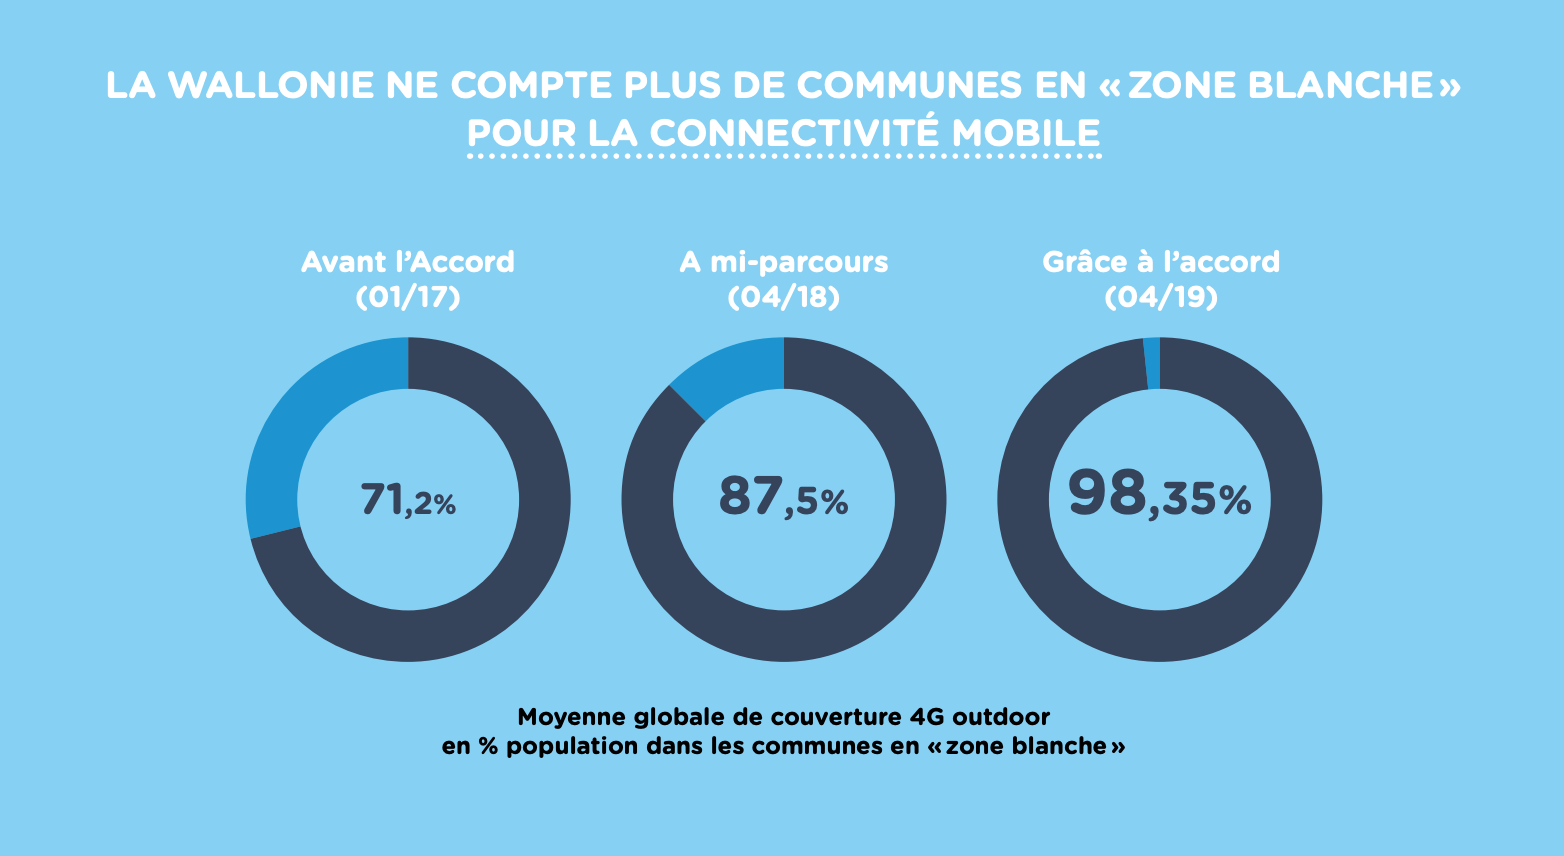 Infographie ToP - couverture 4G outdoor des 39 communes en zones blanches - pourcentage population